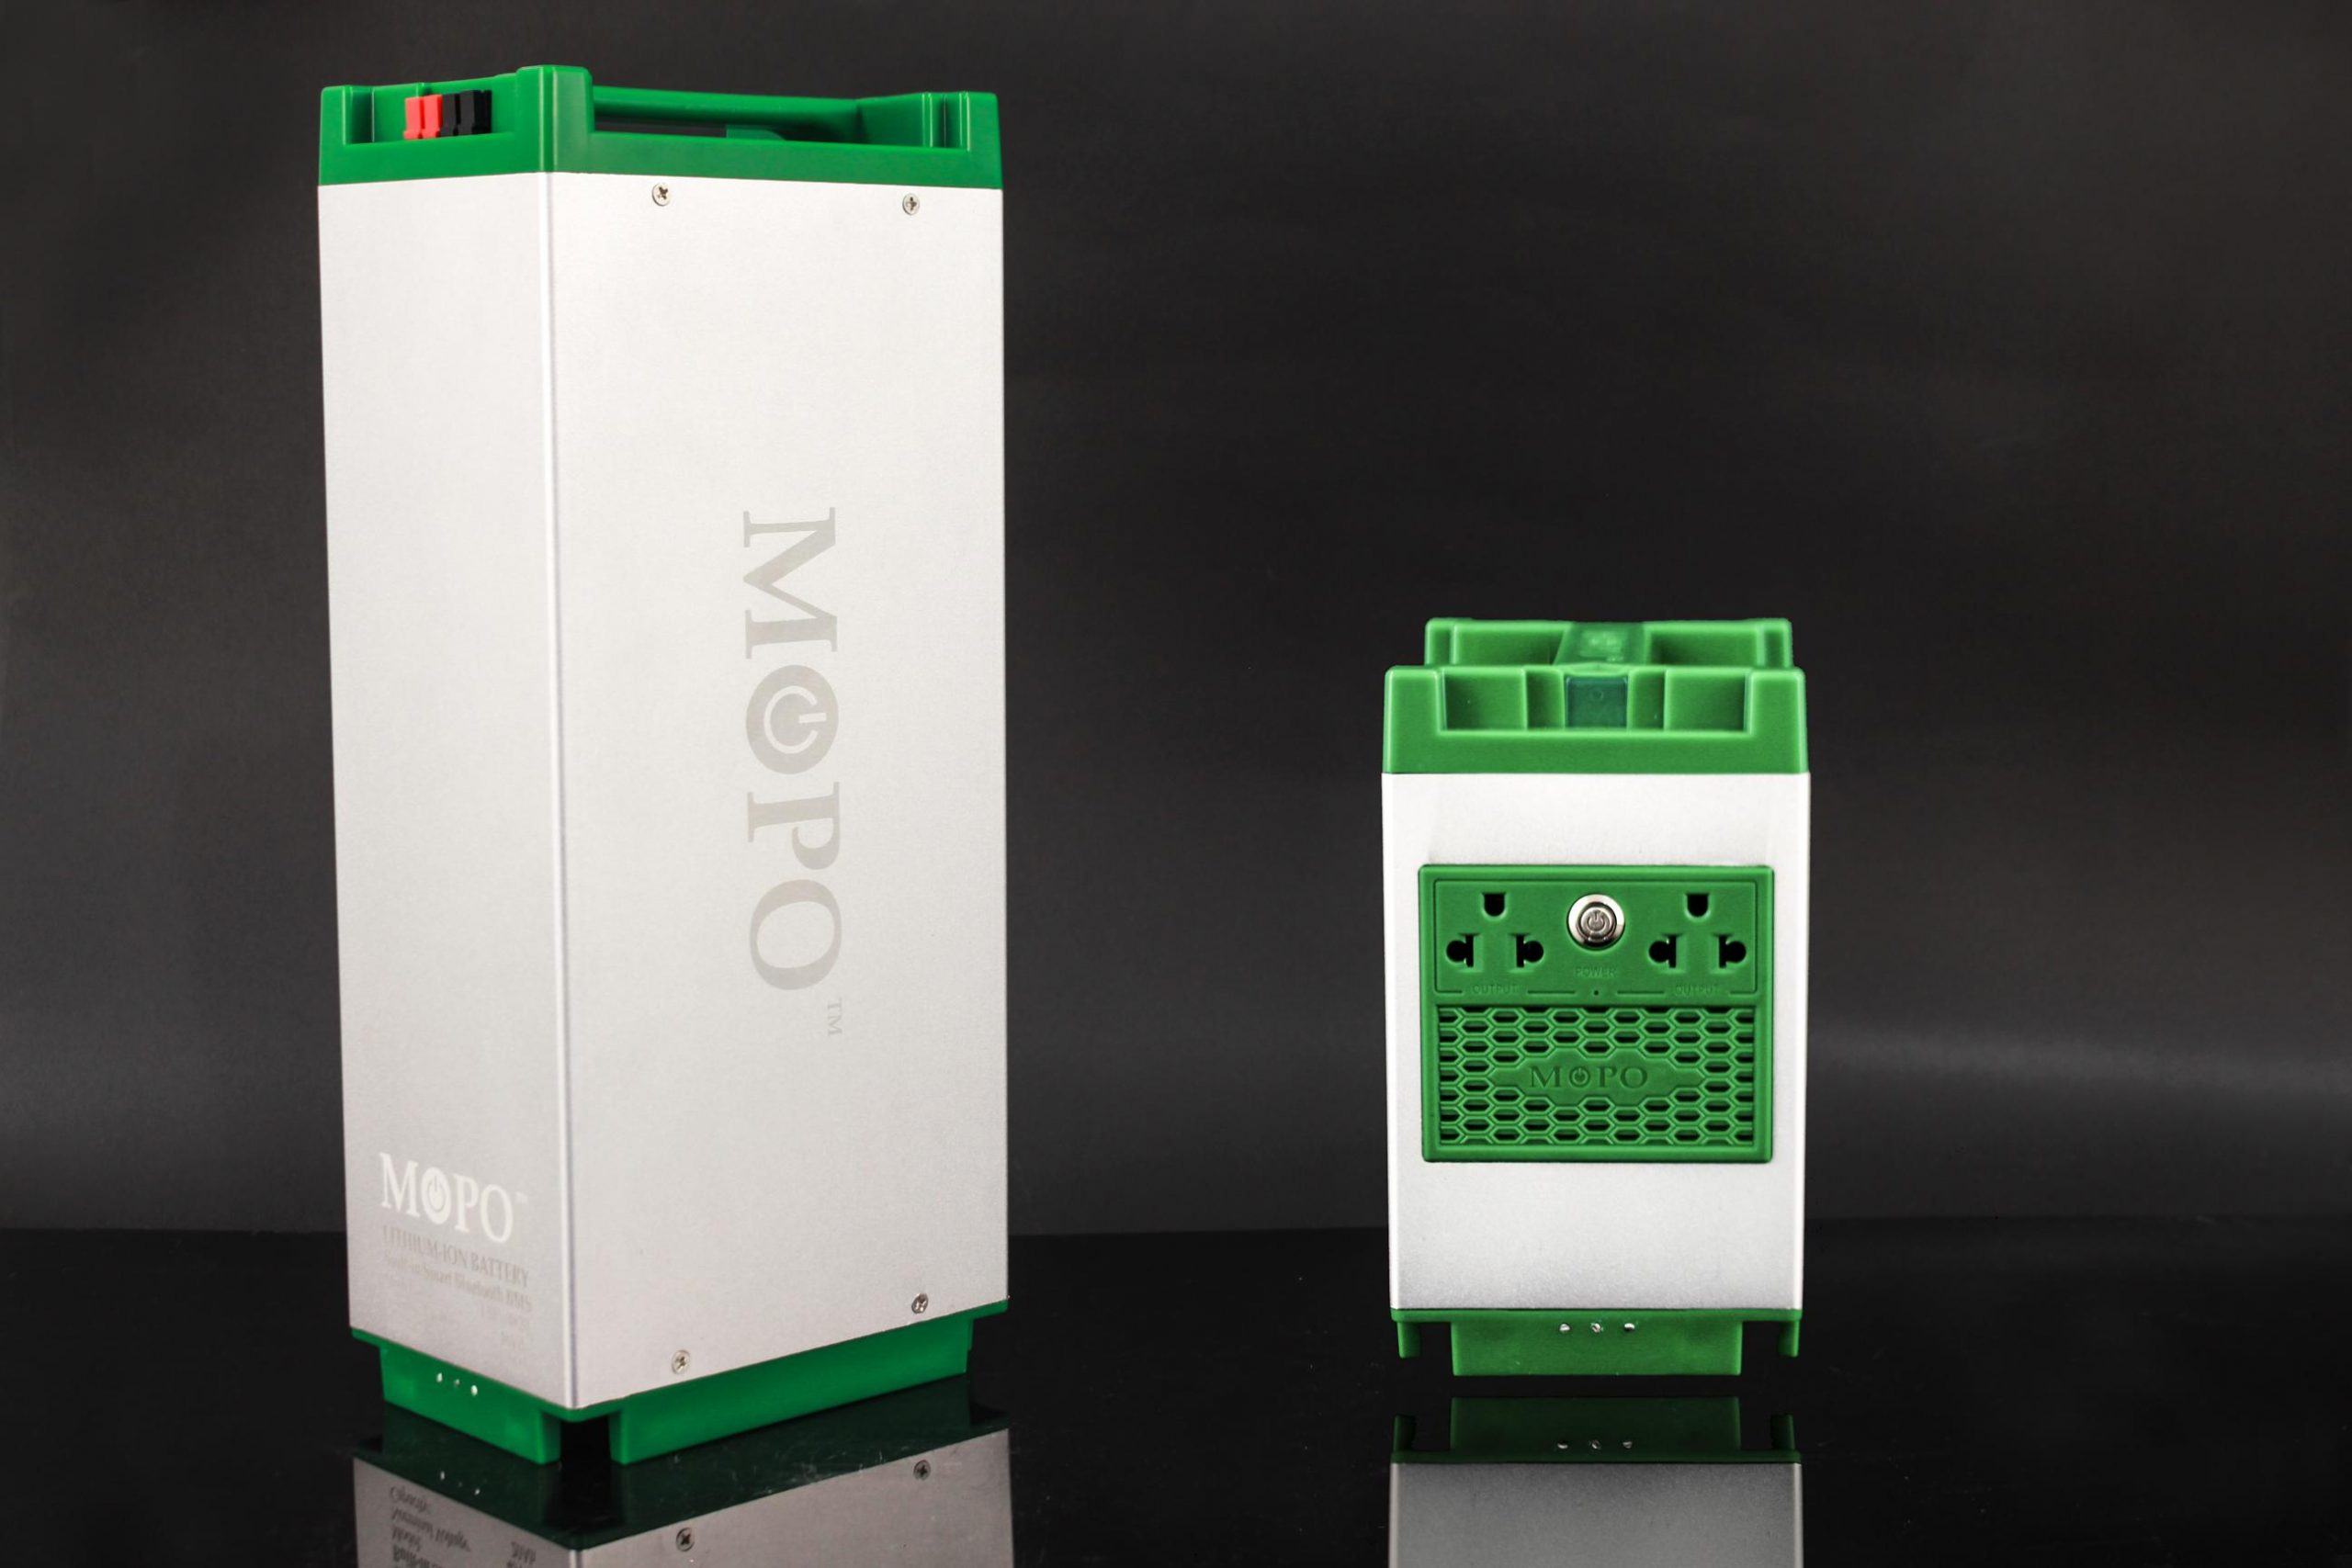 Pin Mopo Max có nhiều ưu điểm, đặc biệt tính an toàn được đảm bảo cao khiến người dùng yên tâm sử dụng 